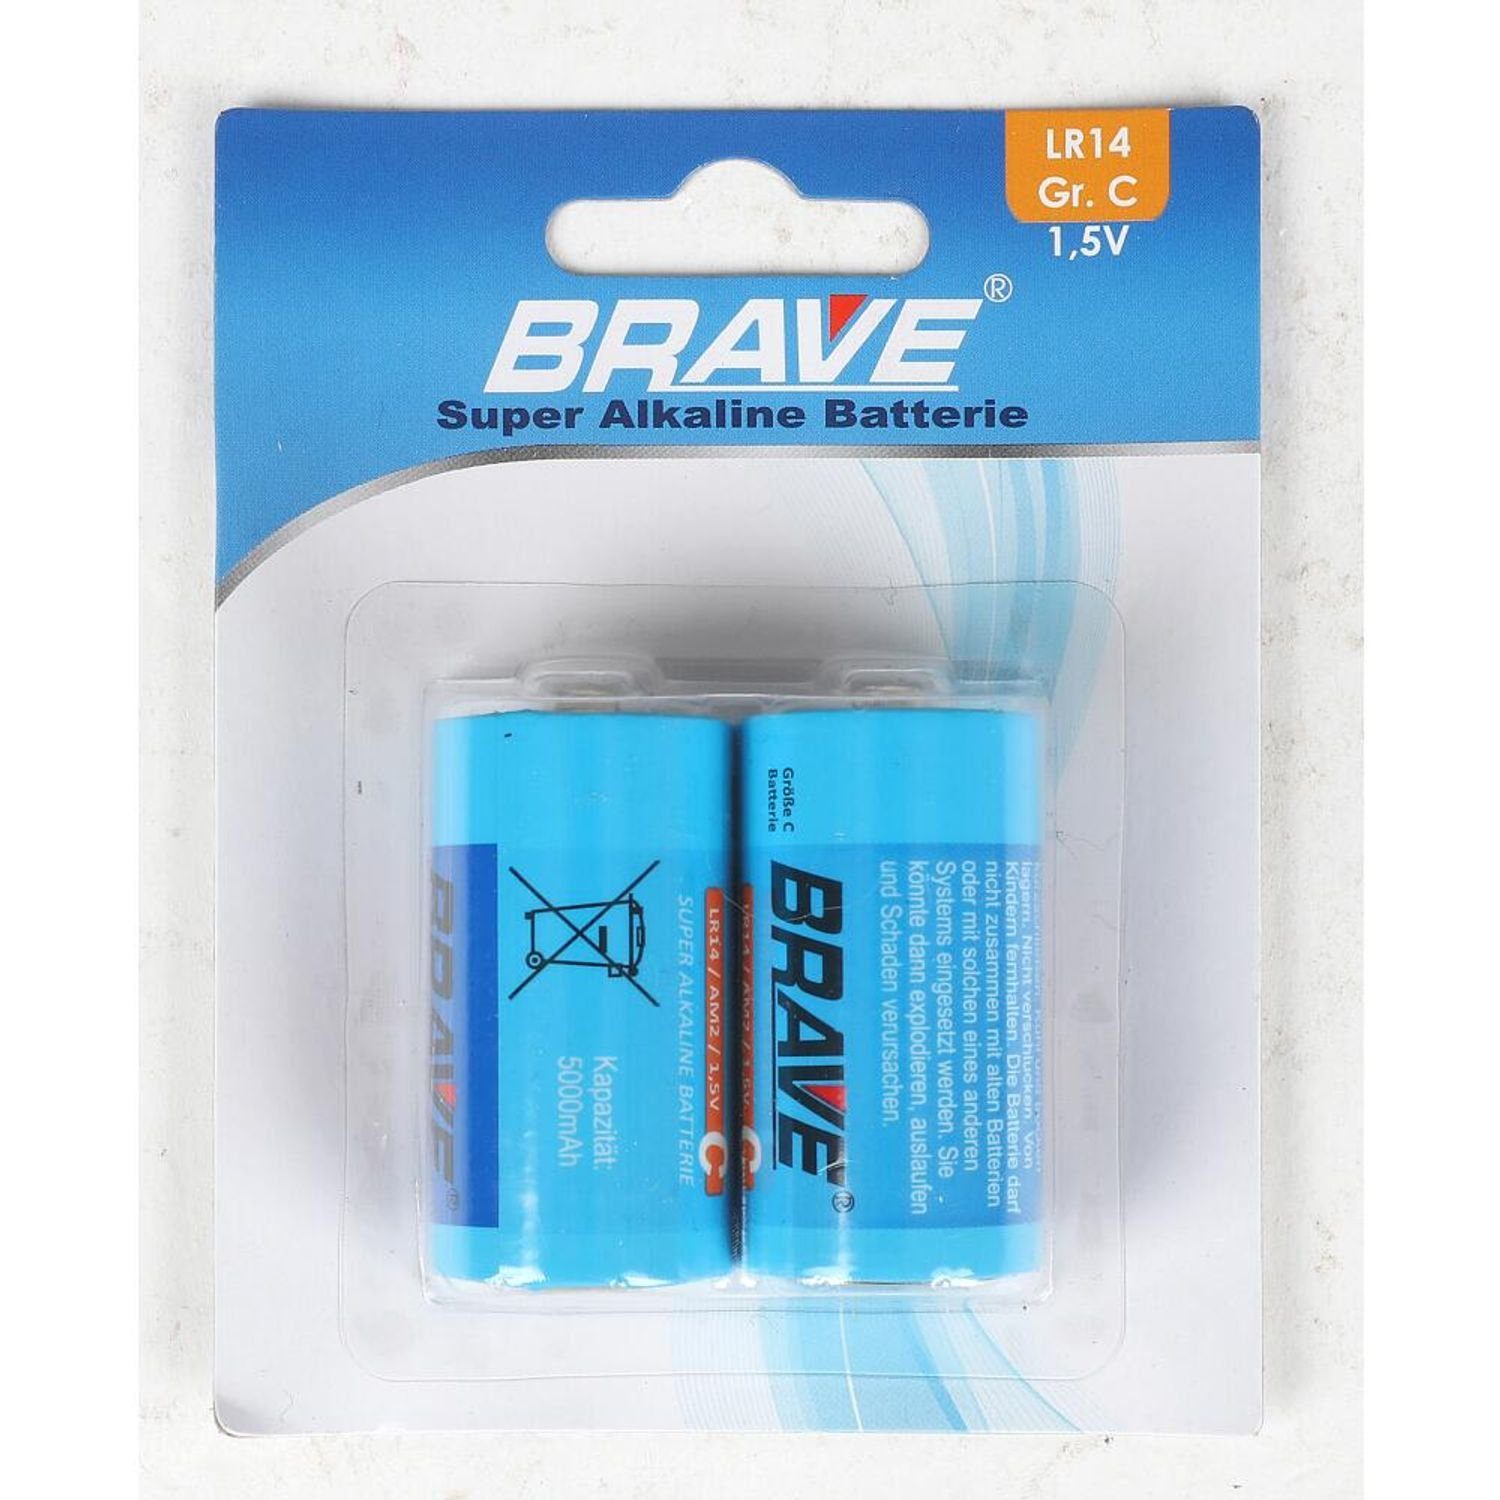 BURI 12x Brave Alkaline Batterien 2er Set Gr.C 1,5V LR14 Industrial Univers Batterie, (24 St)